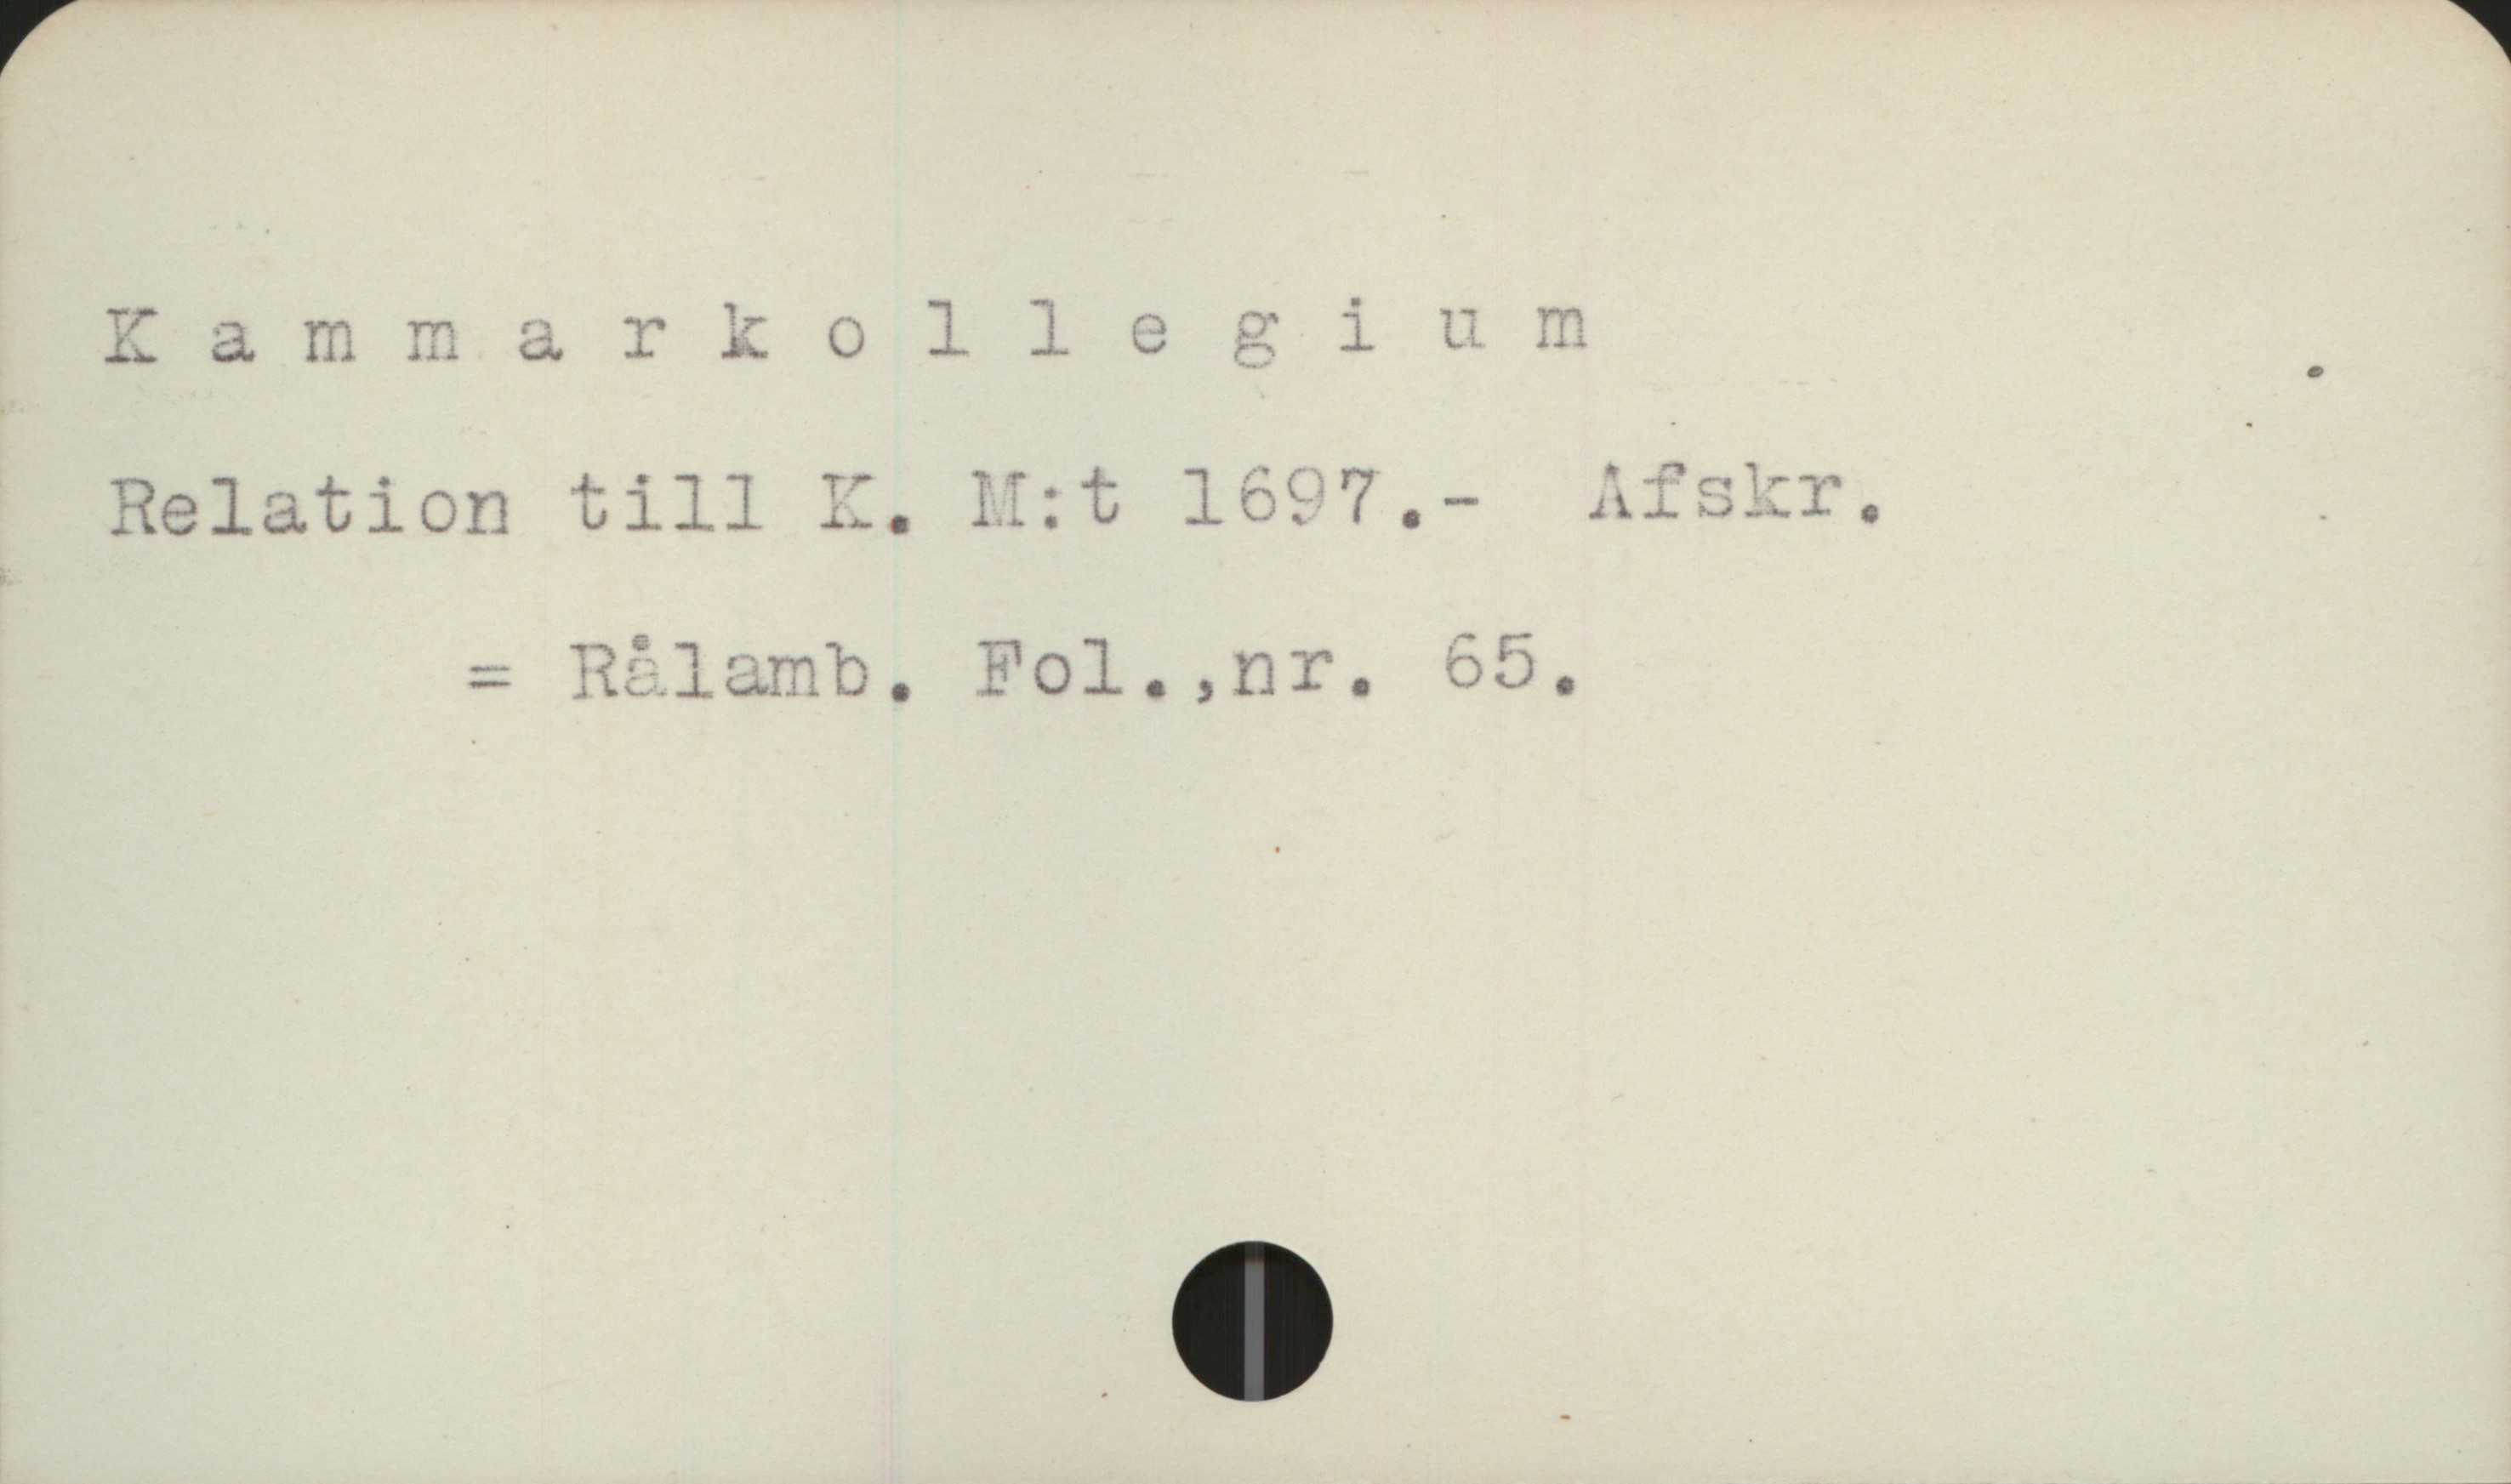  Xammarkollegium
Relation till II, !!:t 1697.,- _
- Rålamb. "ol. ,nr,. 609.

